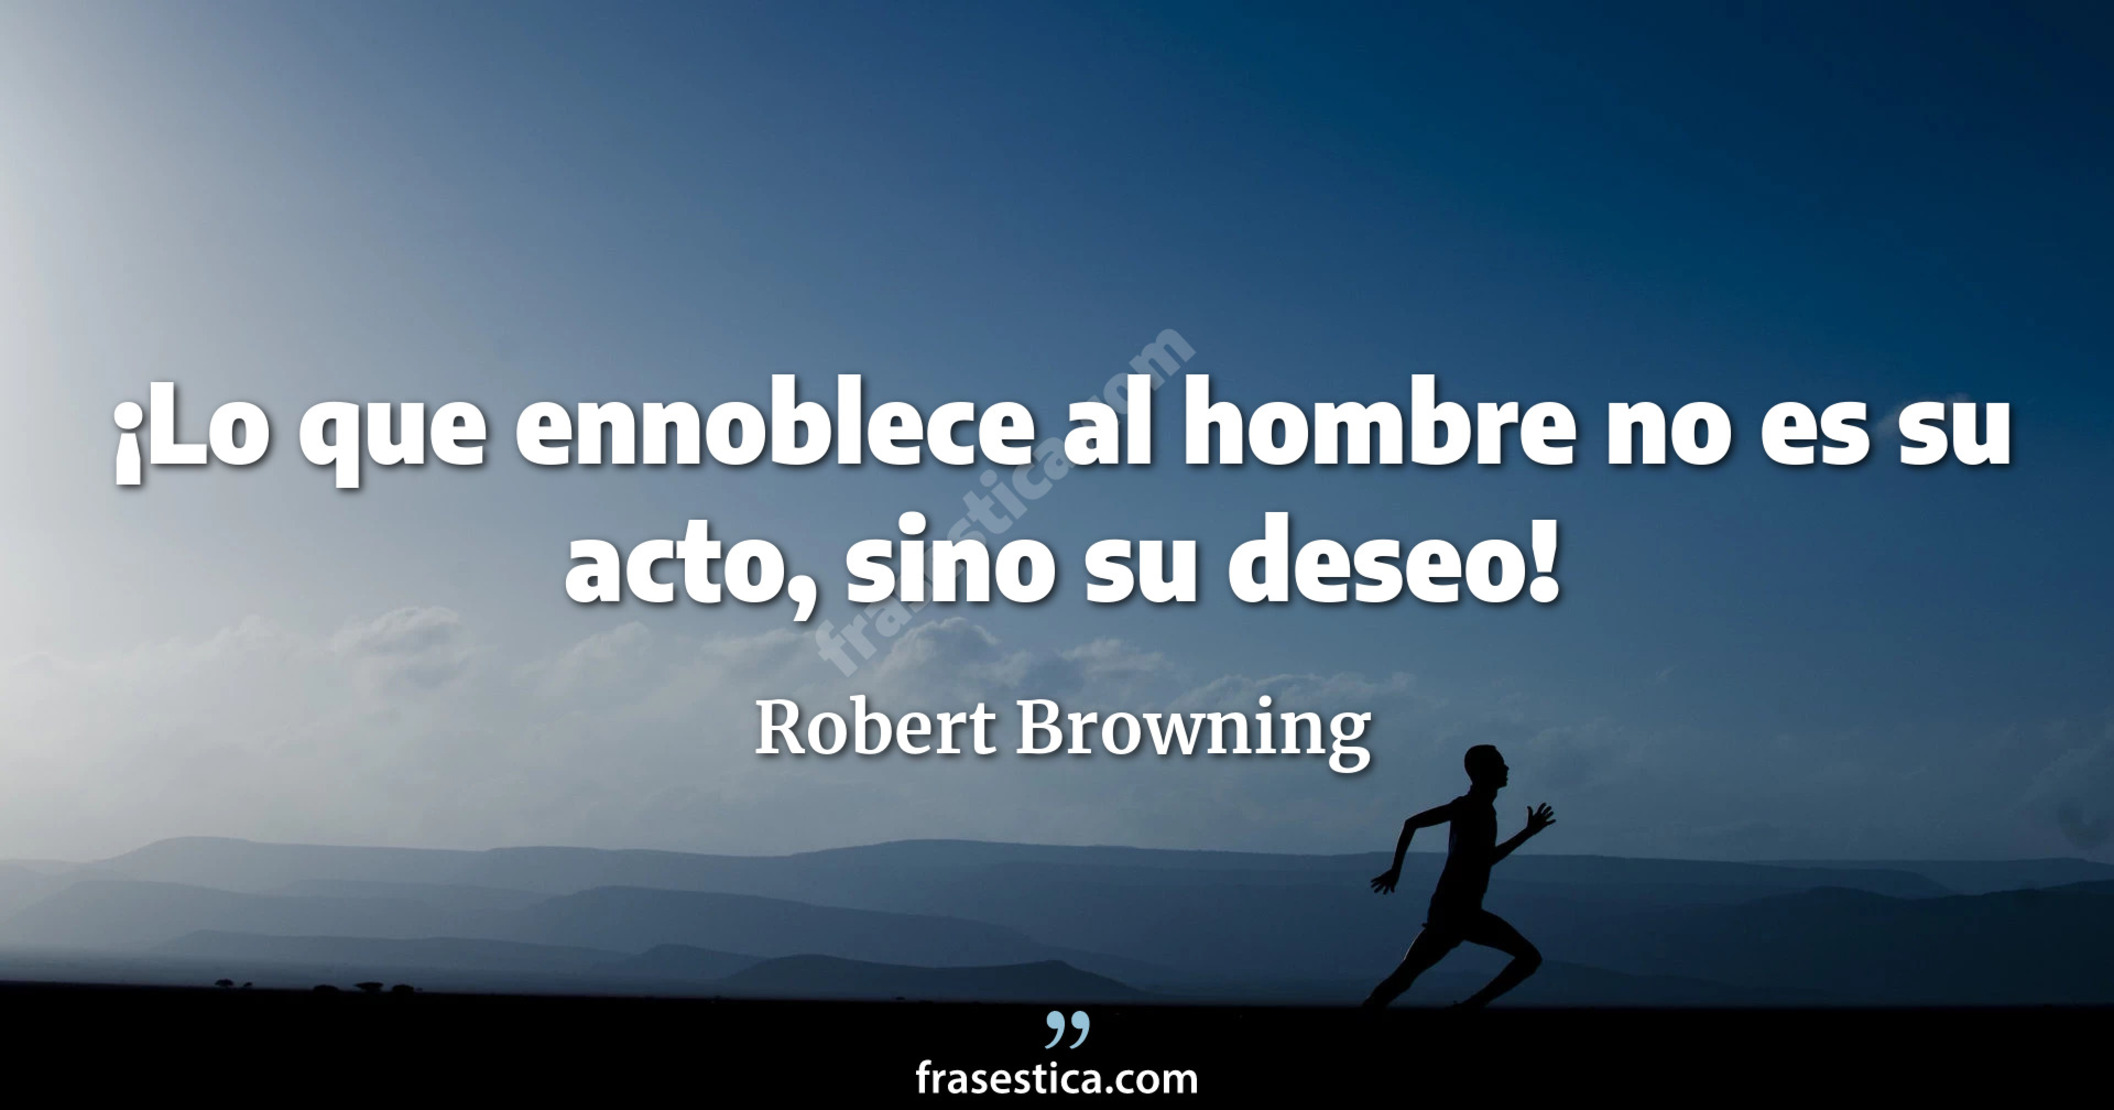 ¡Lo que ennoblece al hombre no es su acto, sino su deseo! - Robert Browning